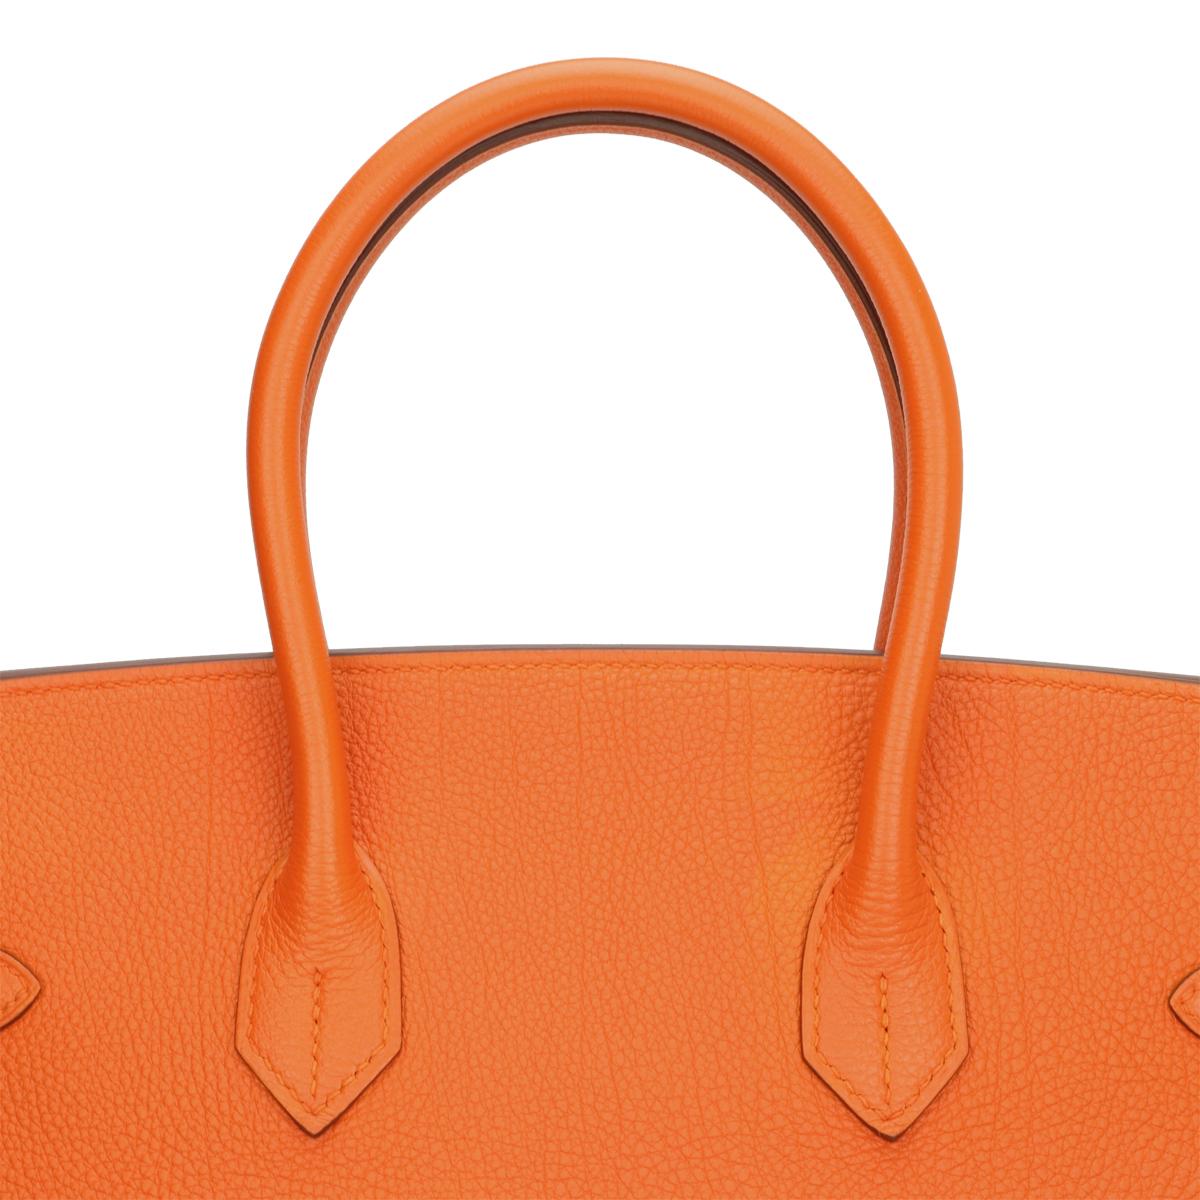 Hermès Birkin Bag 35cm Orange Togo Leather with Palladium Hardware Stamp N 2010 6